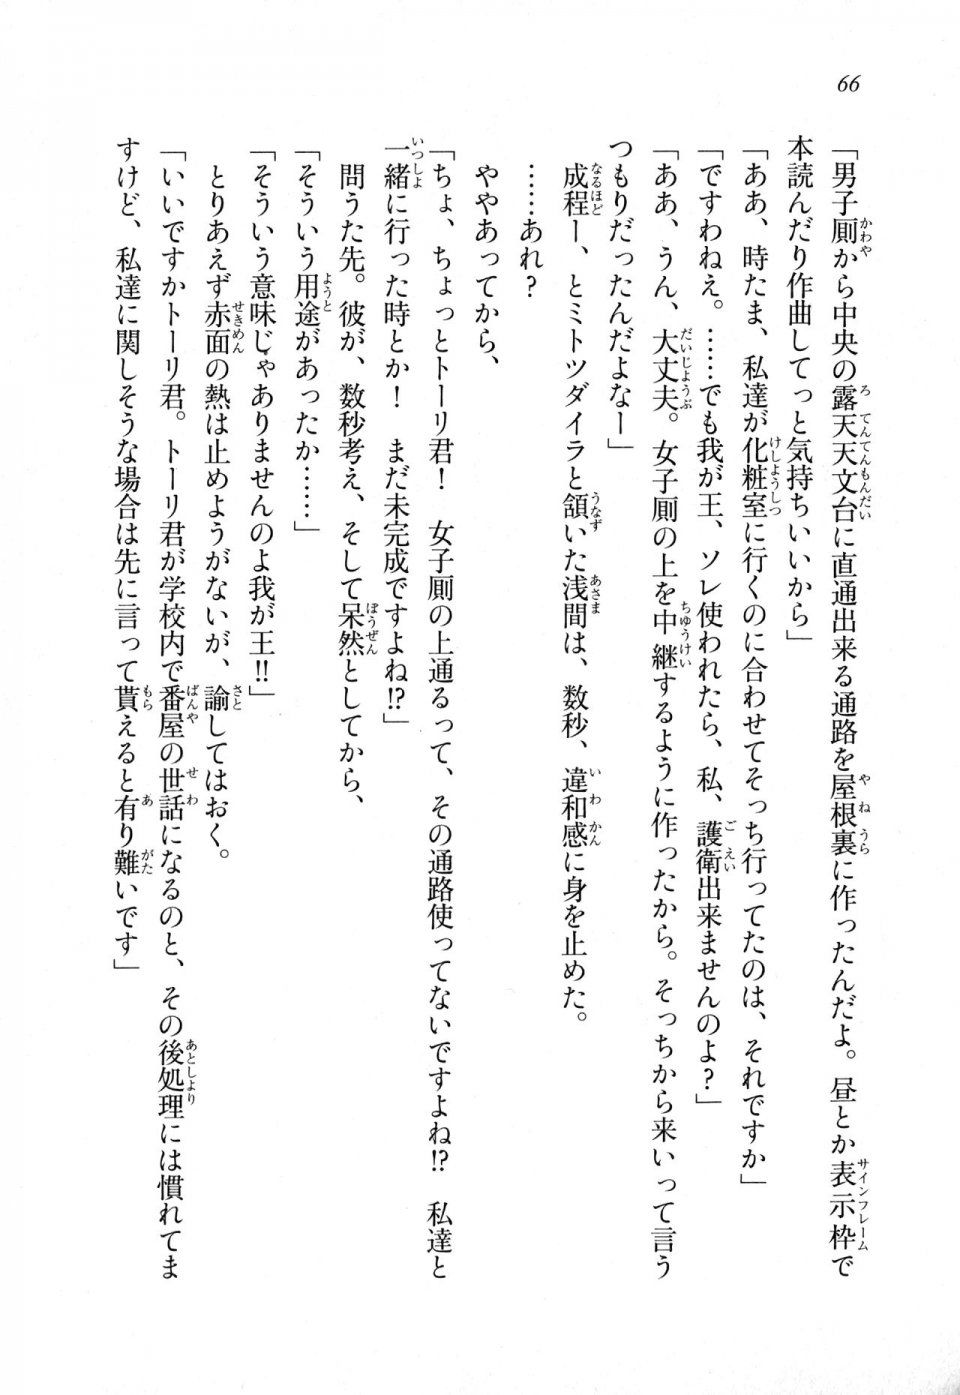 Kyoukai Senjou no Horizon LN Sidestory Vol 1 - Photo #64